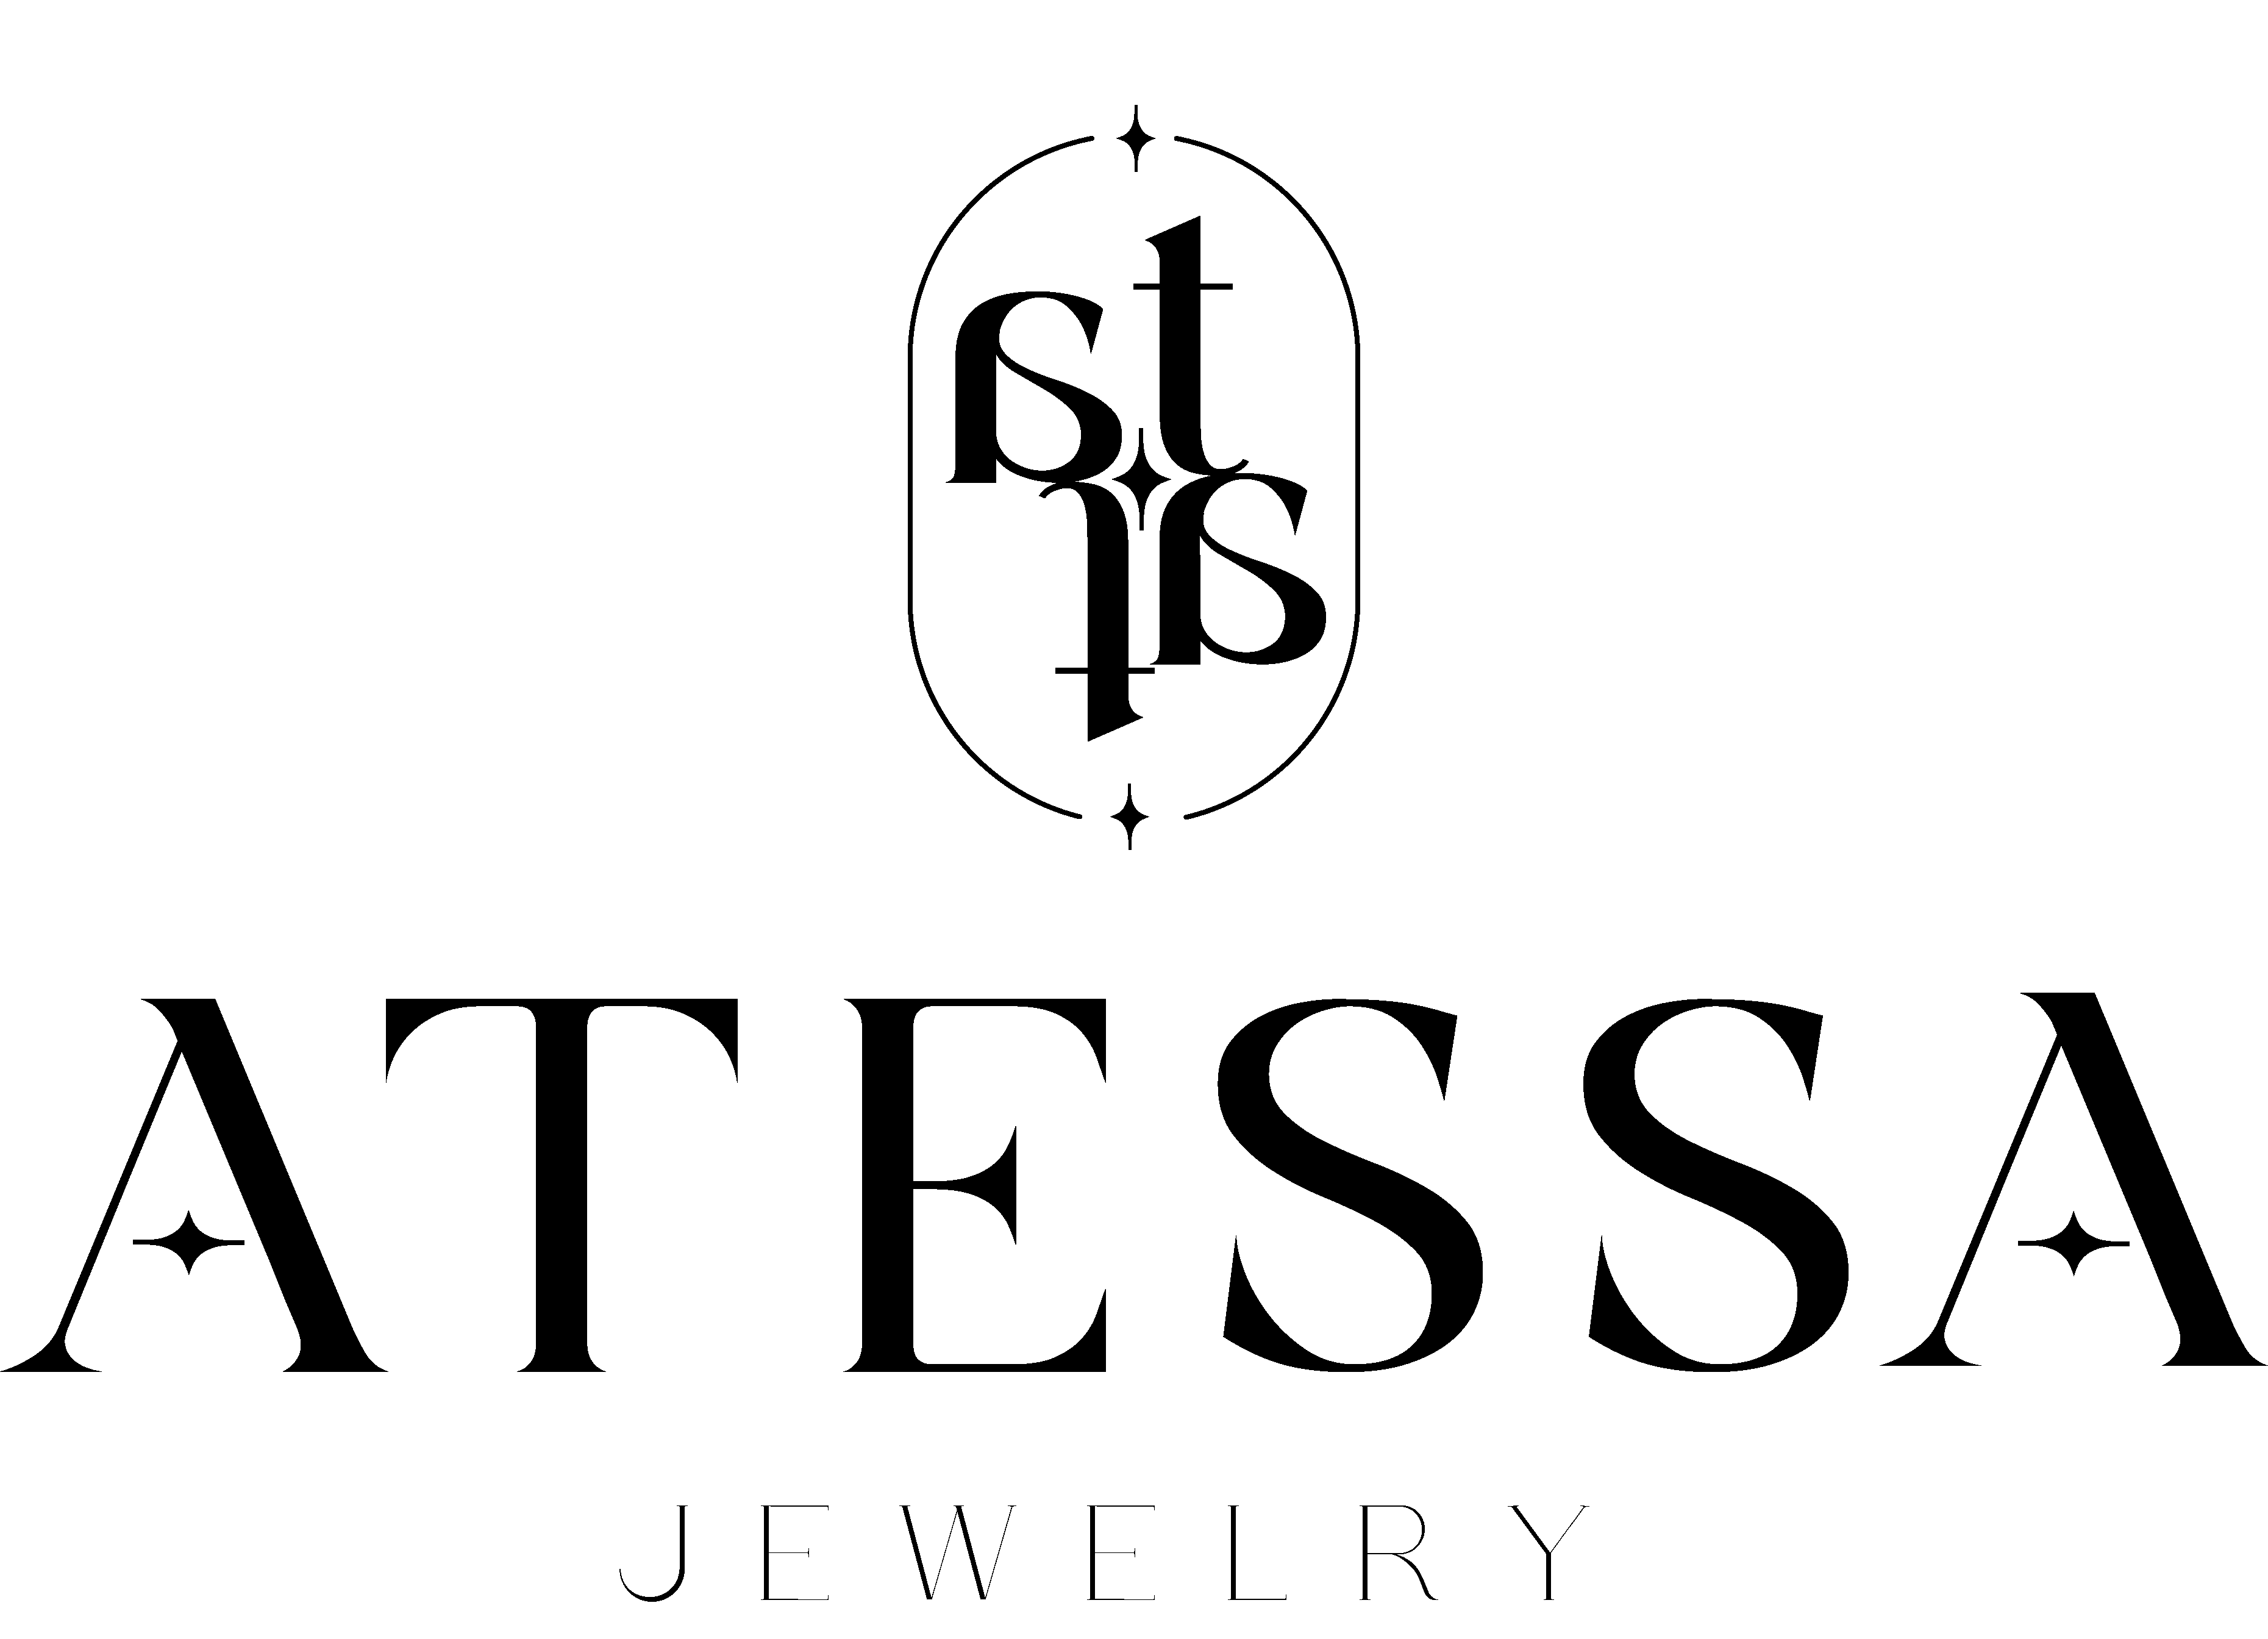 atessa jewelry